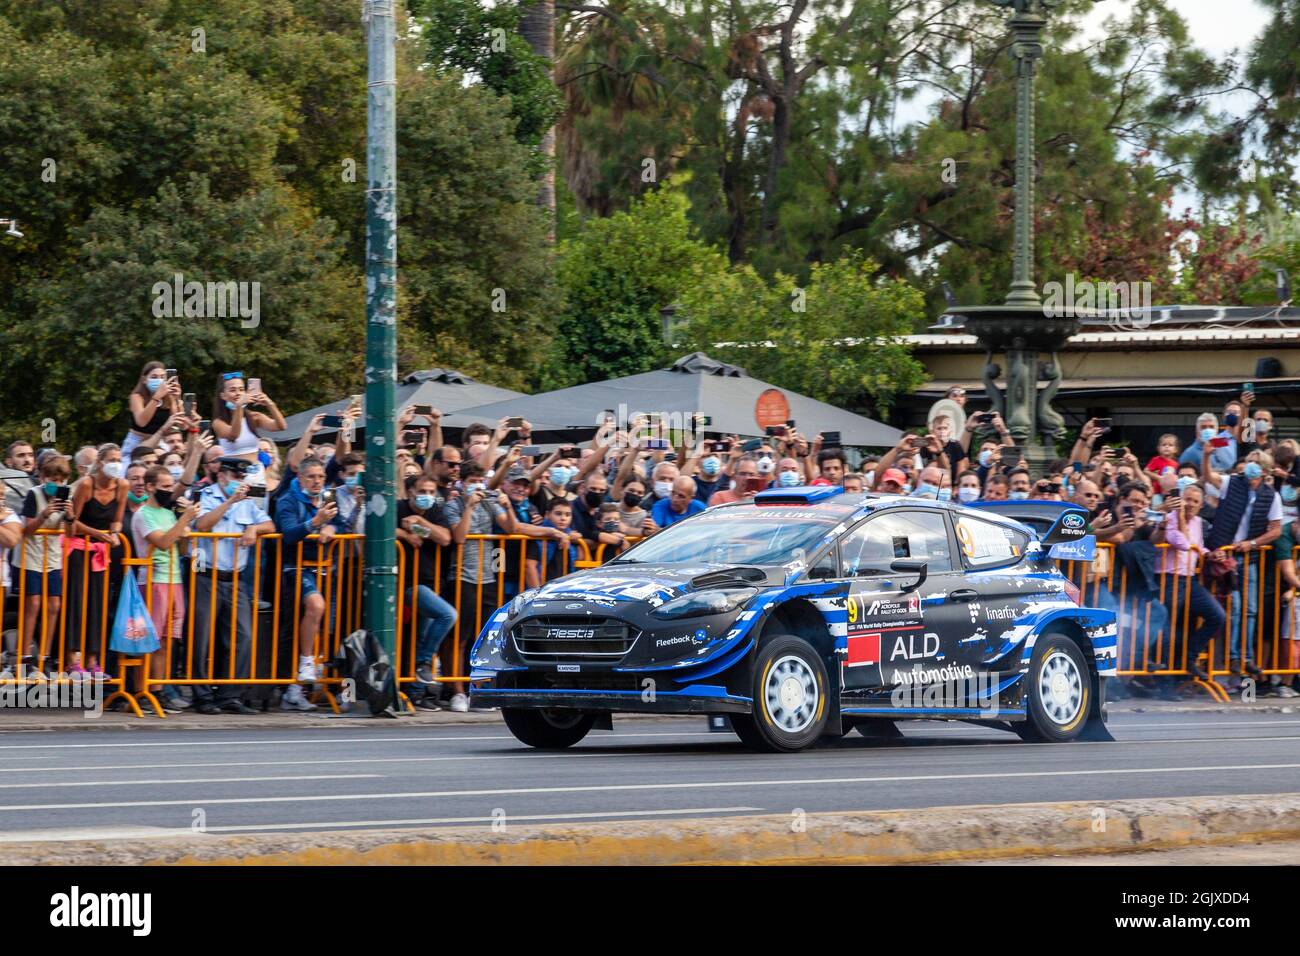 Voiture de course Ford Fiesta WRC lors de la première étape du Rallye Acropolis 2021, qui s'est tenu à Athènes, en Grèce, également appelé "le Rallye des dieux". Banque D'Images